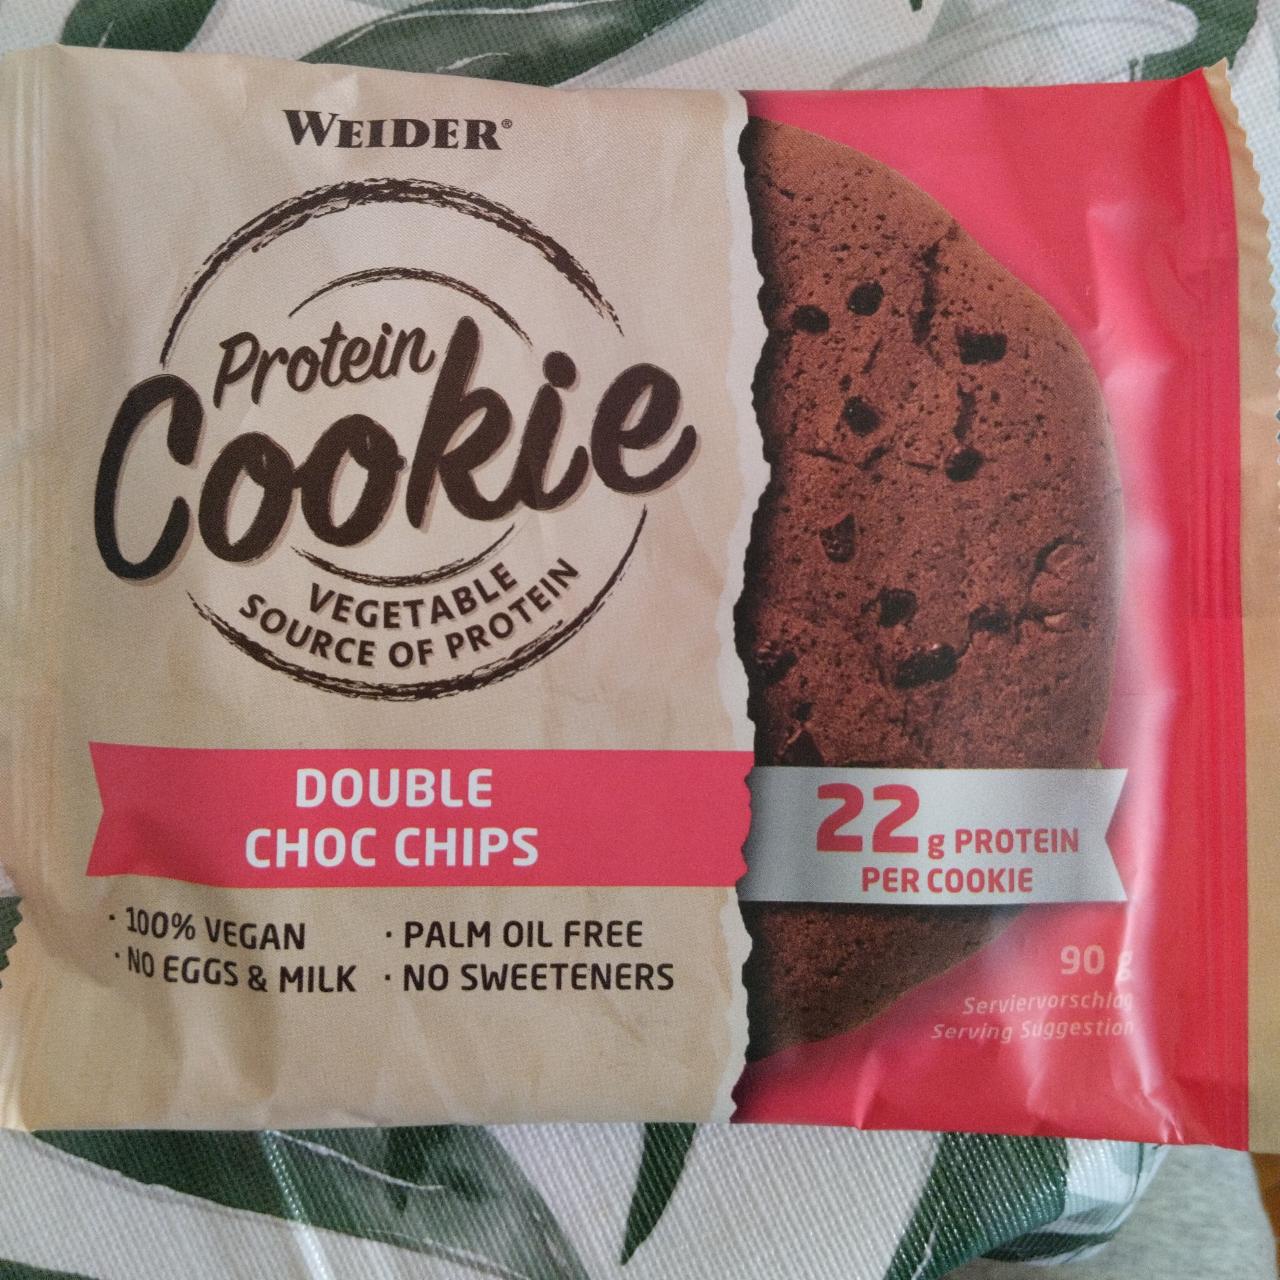 Fotografie - Protein Cookie Double Choc Chips flavour Weider